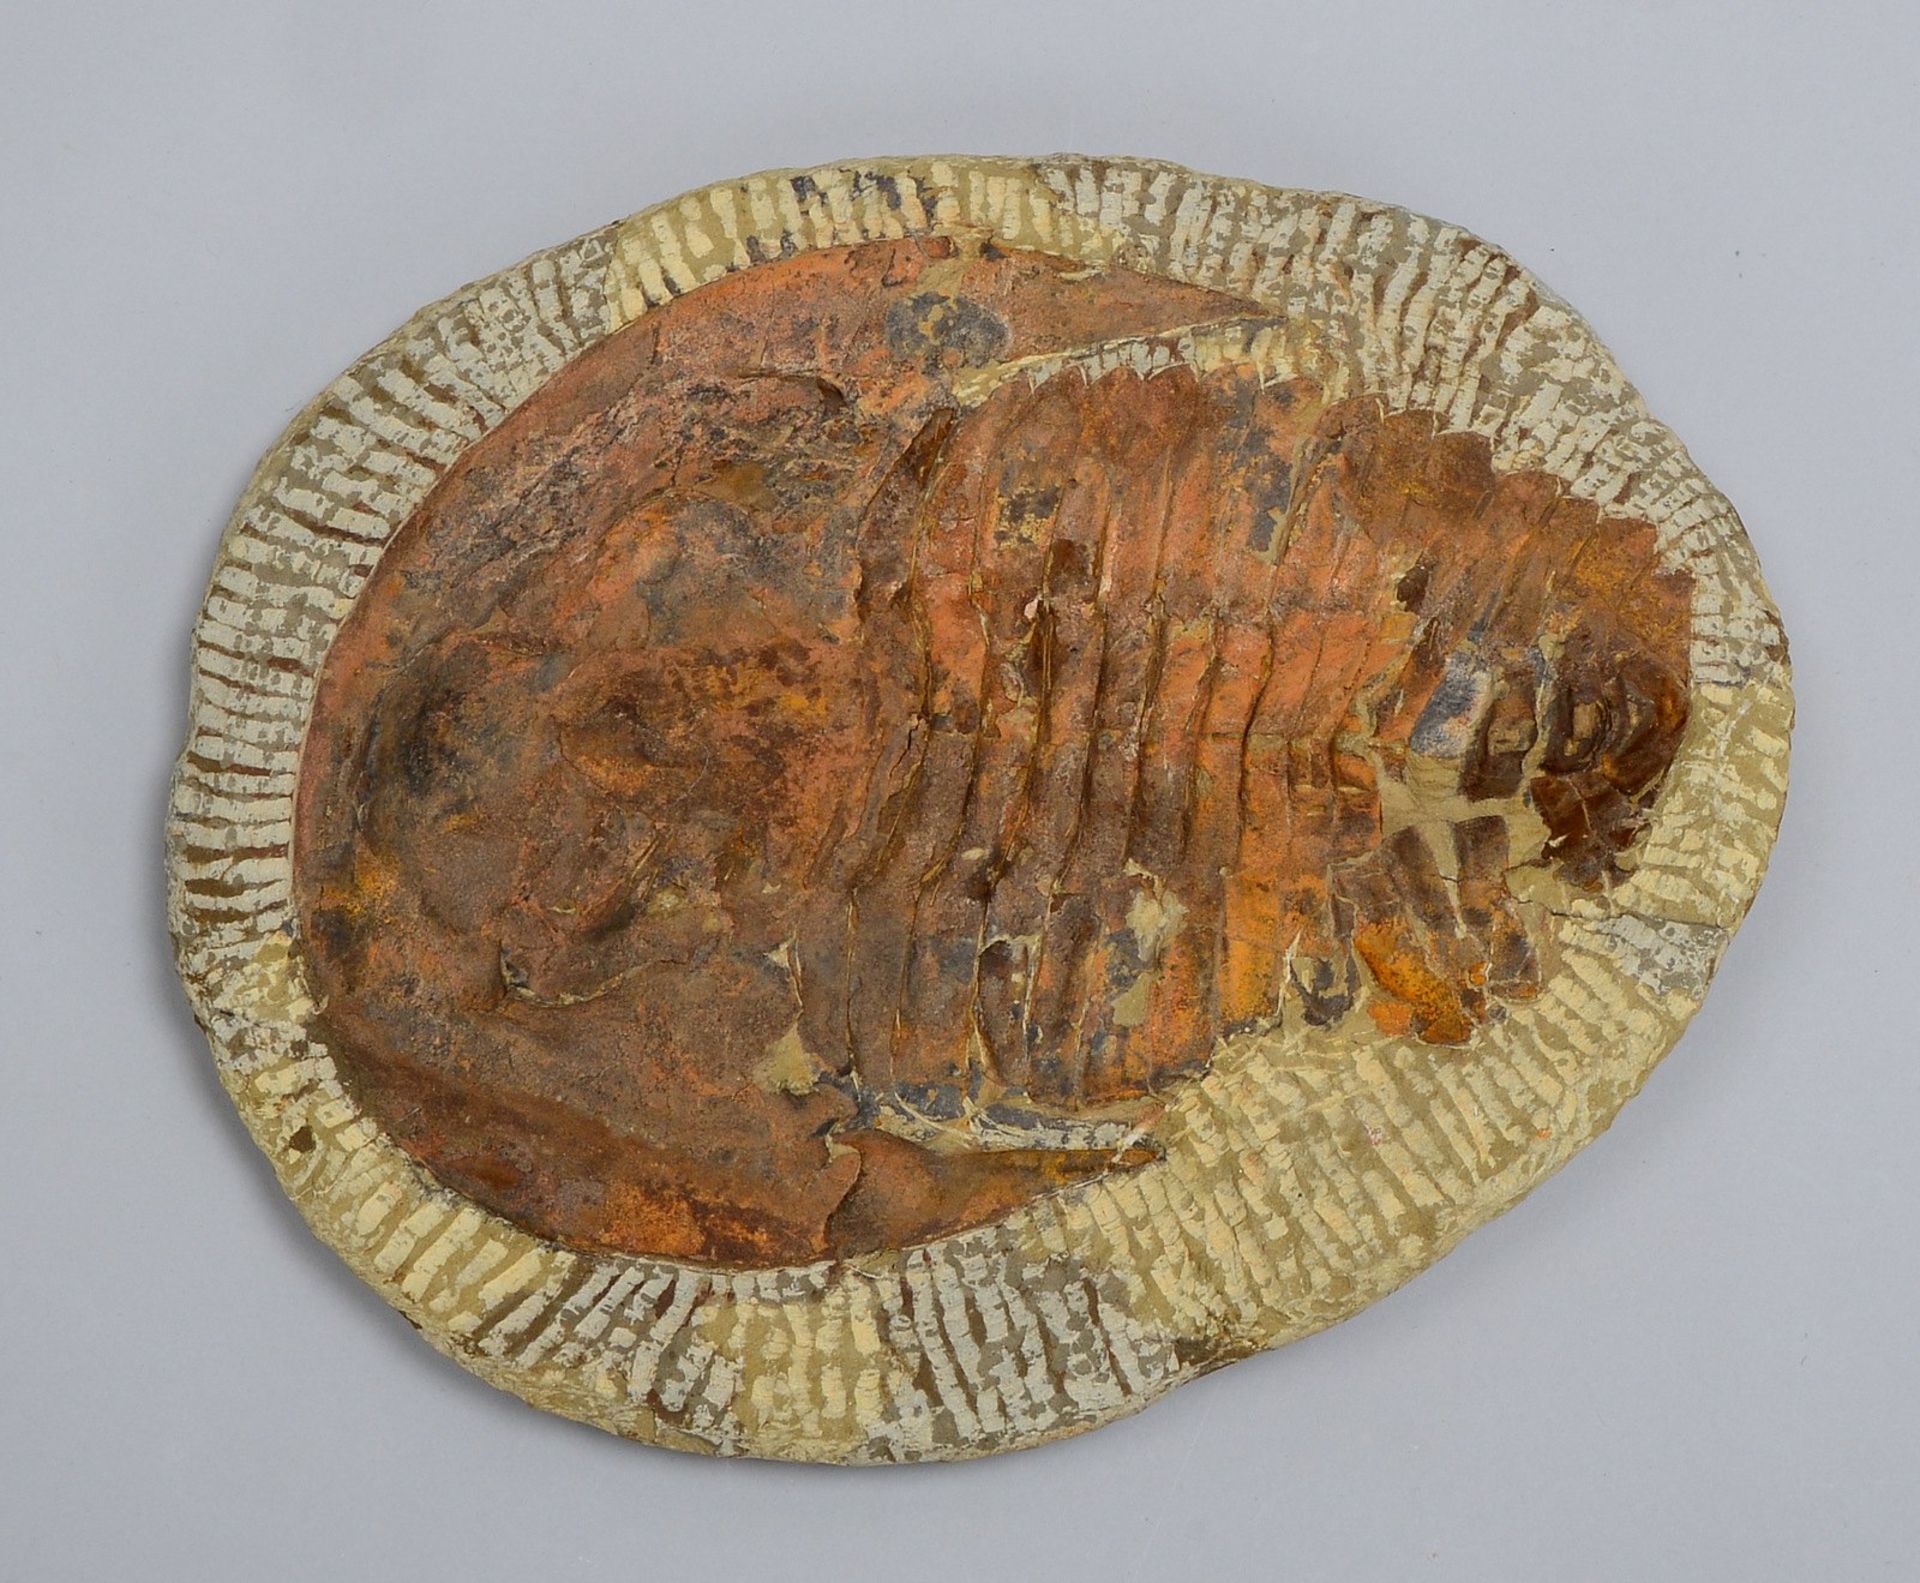 Sammler-Versteinerung, fossiler Trilobit; Maße 28 x 23 cm